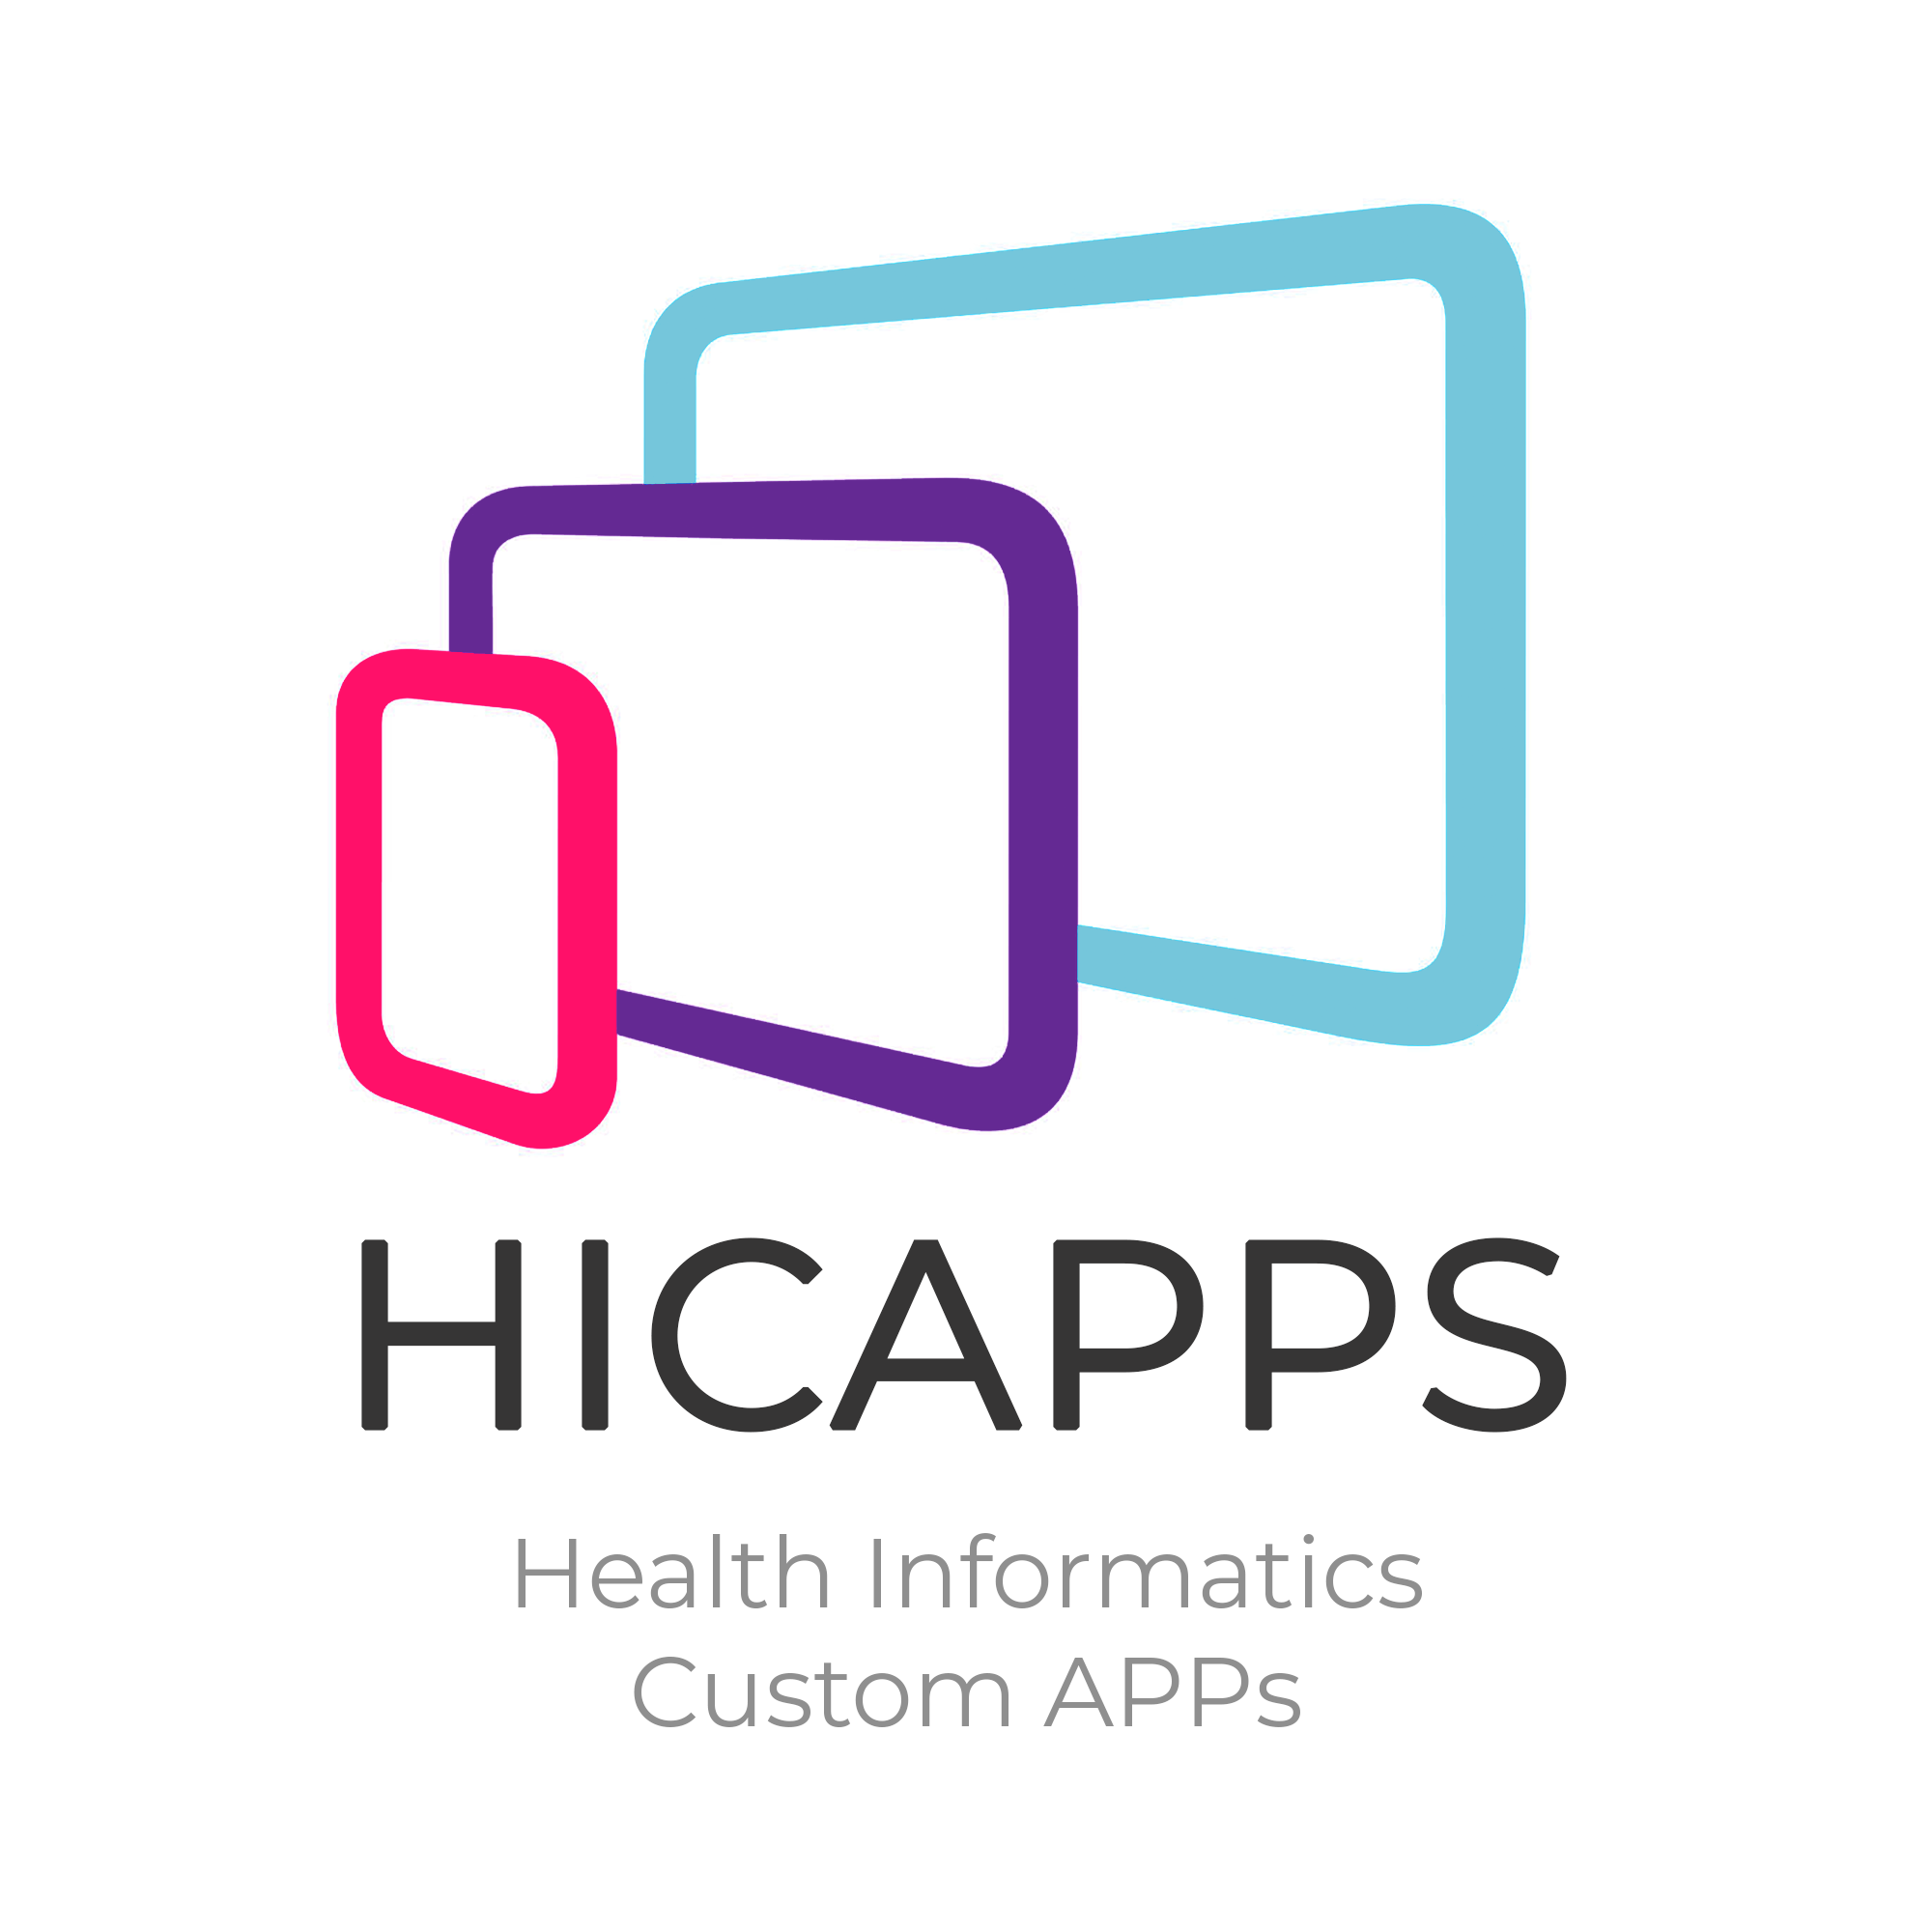 HICAPPS - Health Informatics Custom APPs